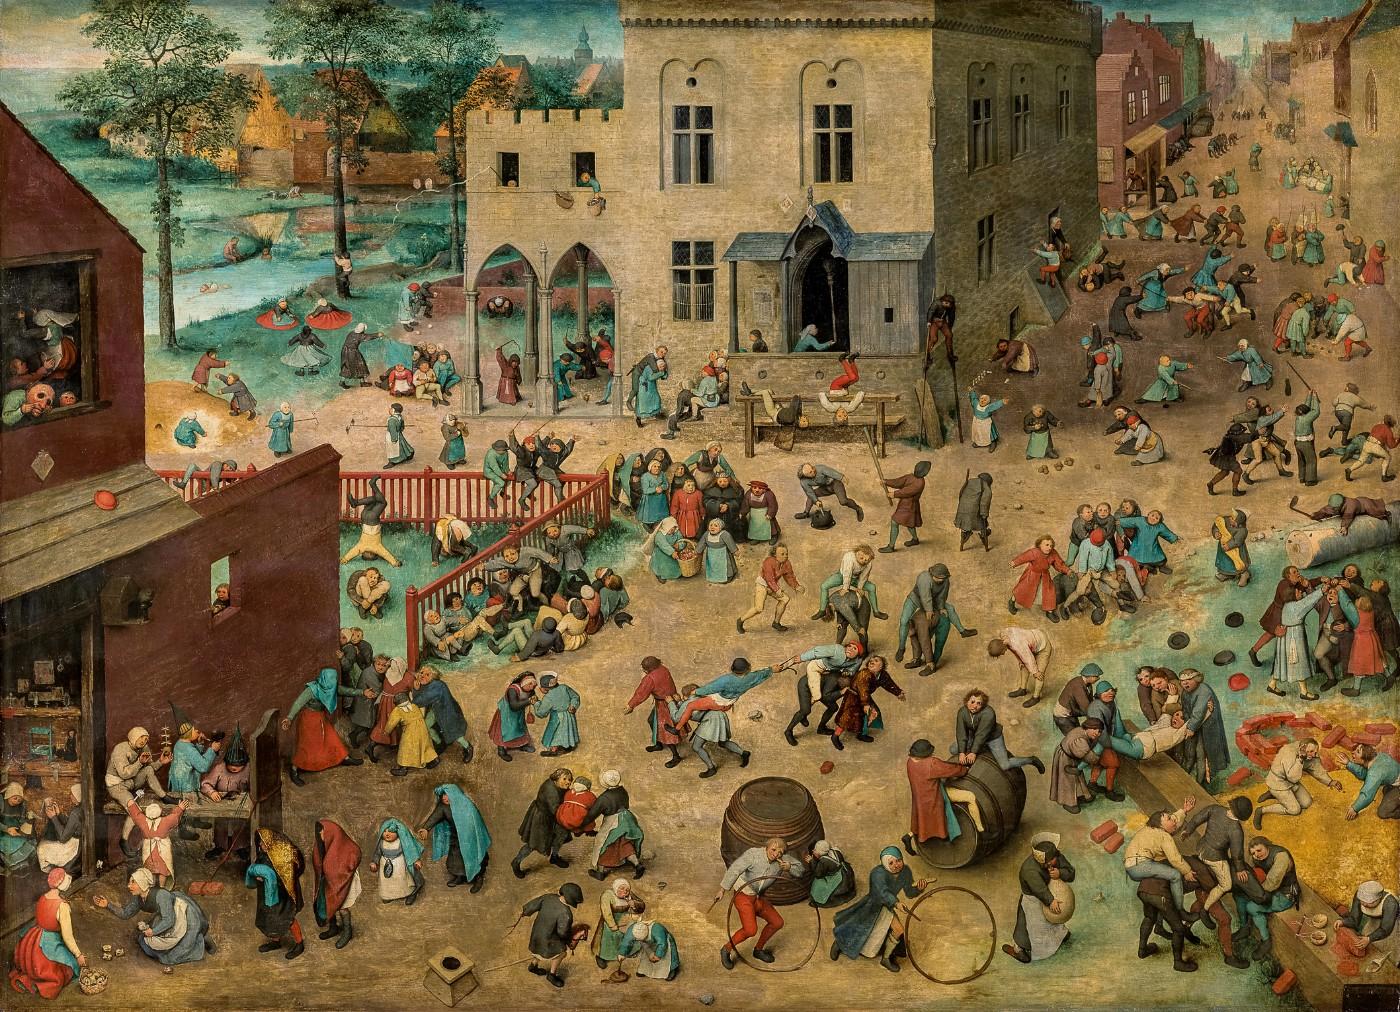 Pieter Bruegel the Elder, Children’s Games, 1560